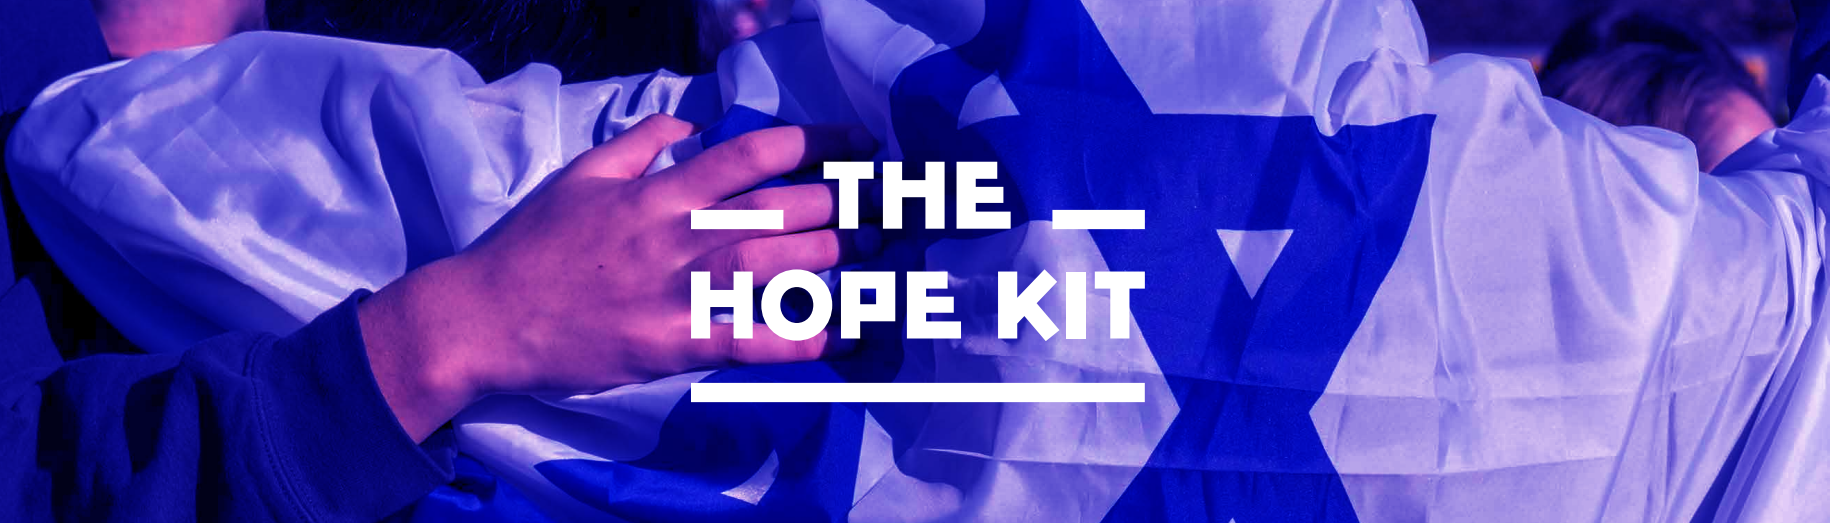 hope kit banner